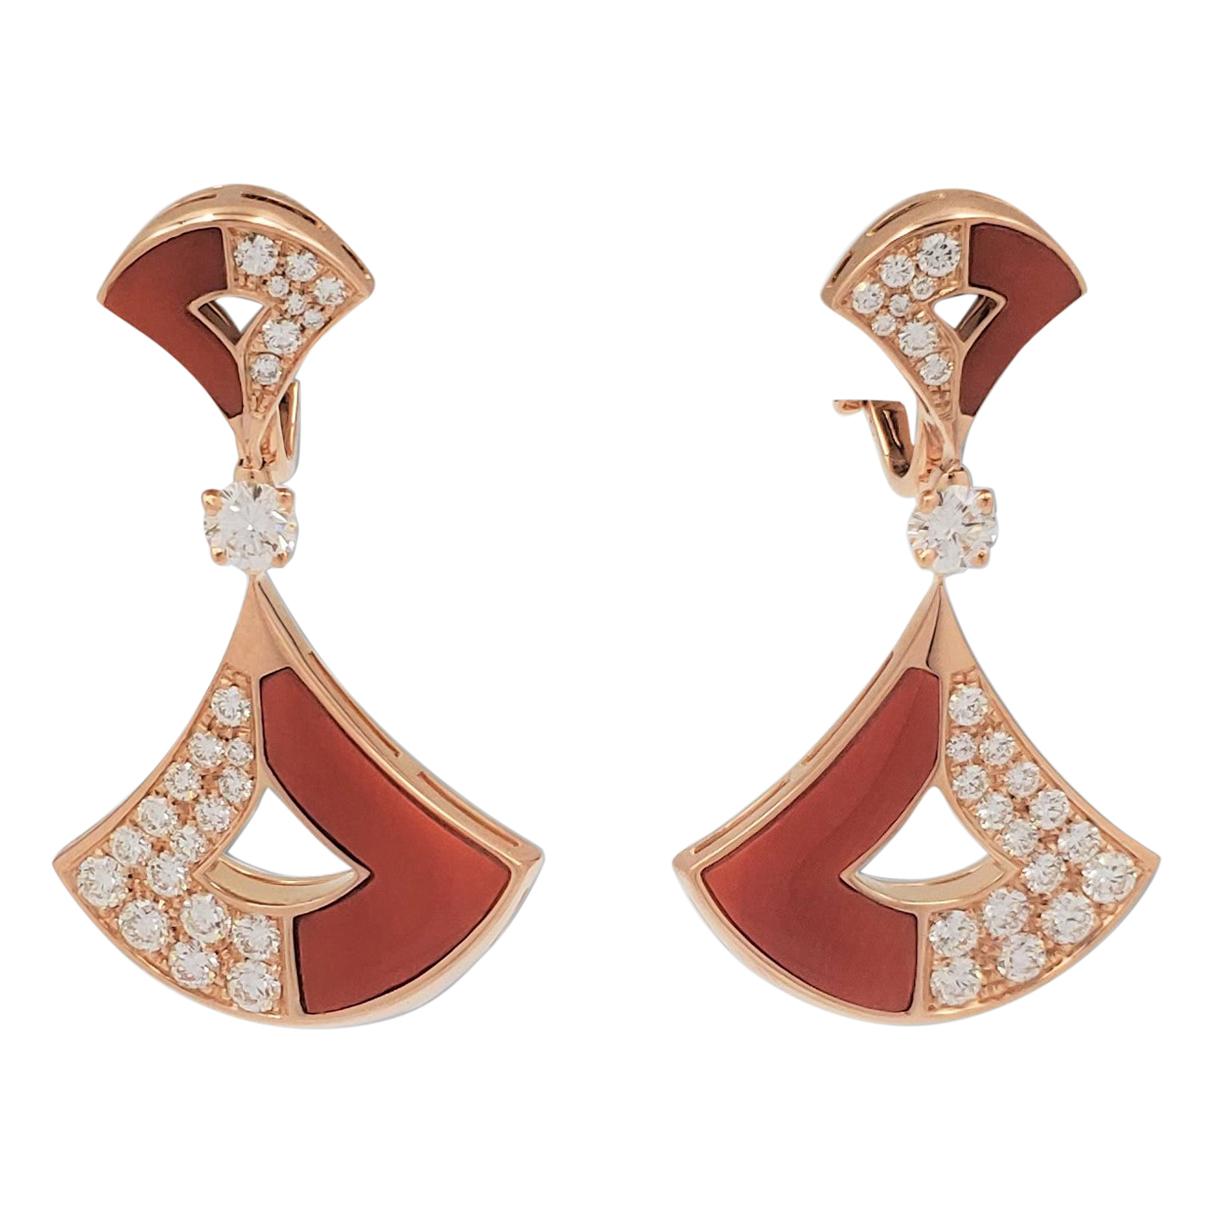 Bvlgari 'Divas' Dream' Rose Gold Coral and Diamond Earrings